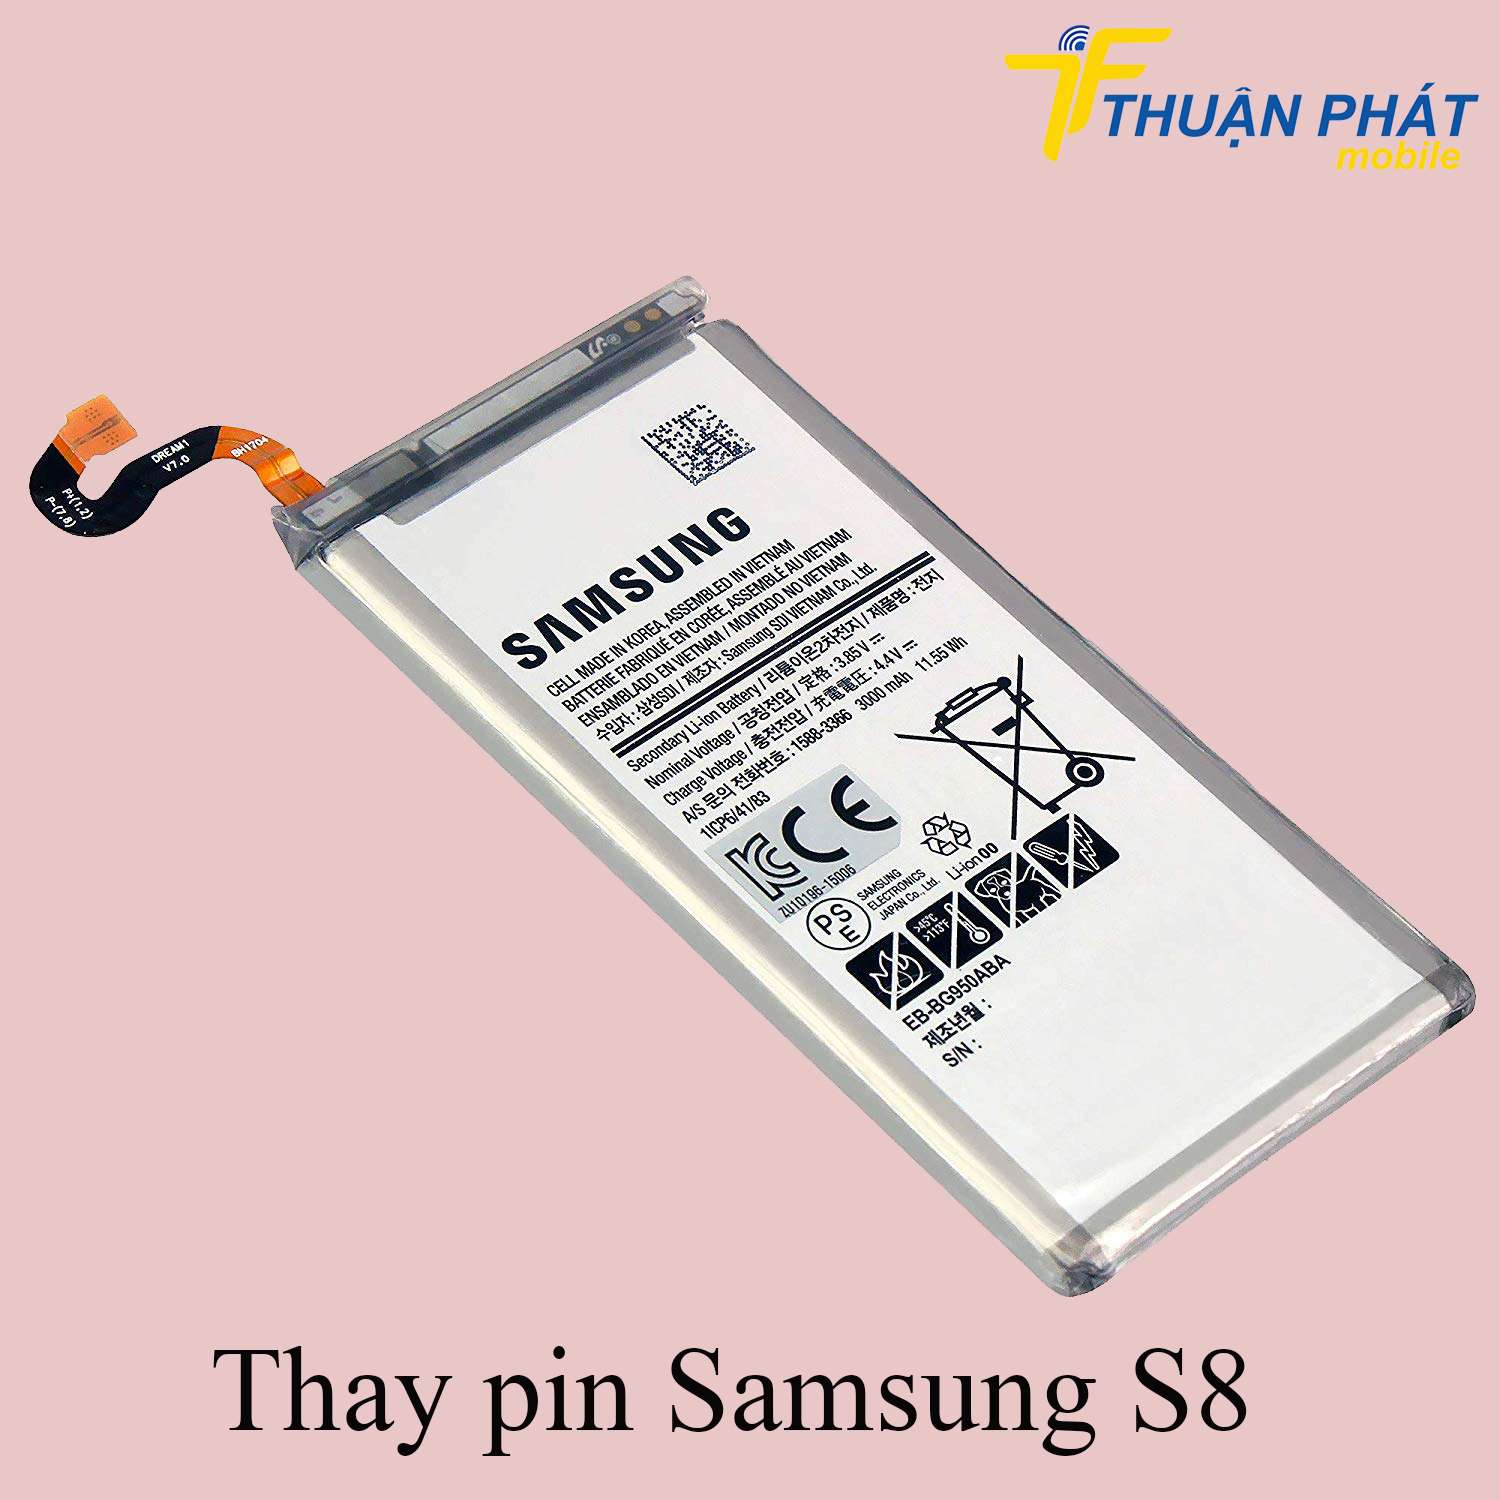 Thay pin Samsung S8 chính hãng